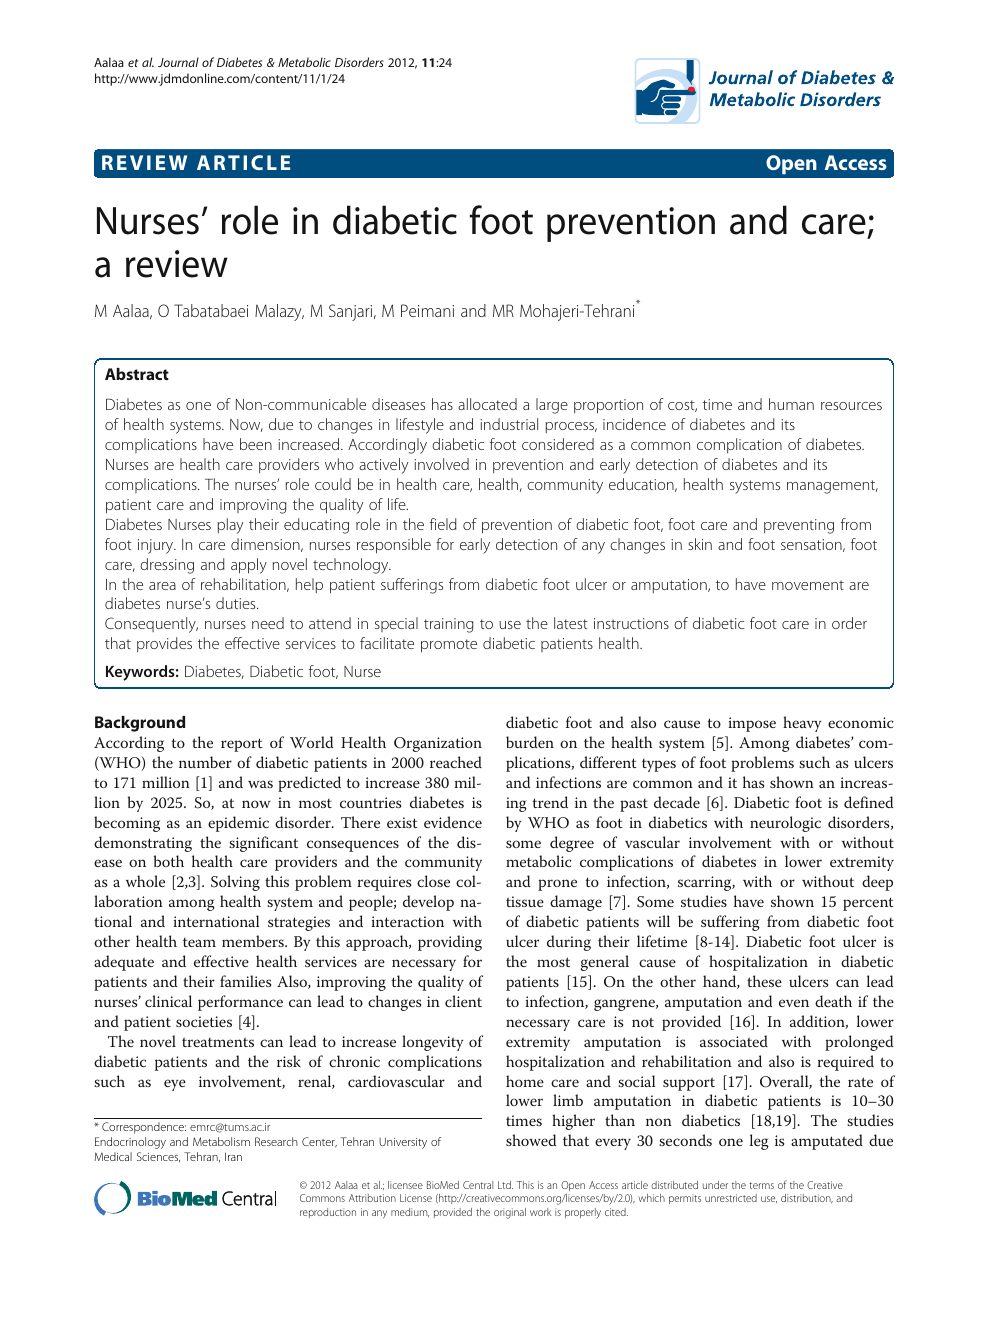 nurses role in diabetes care)